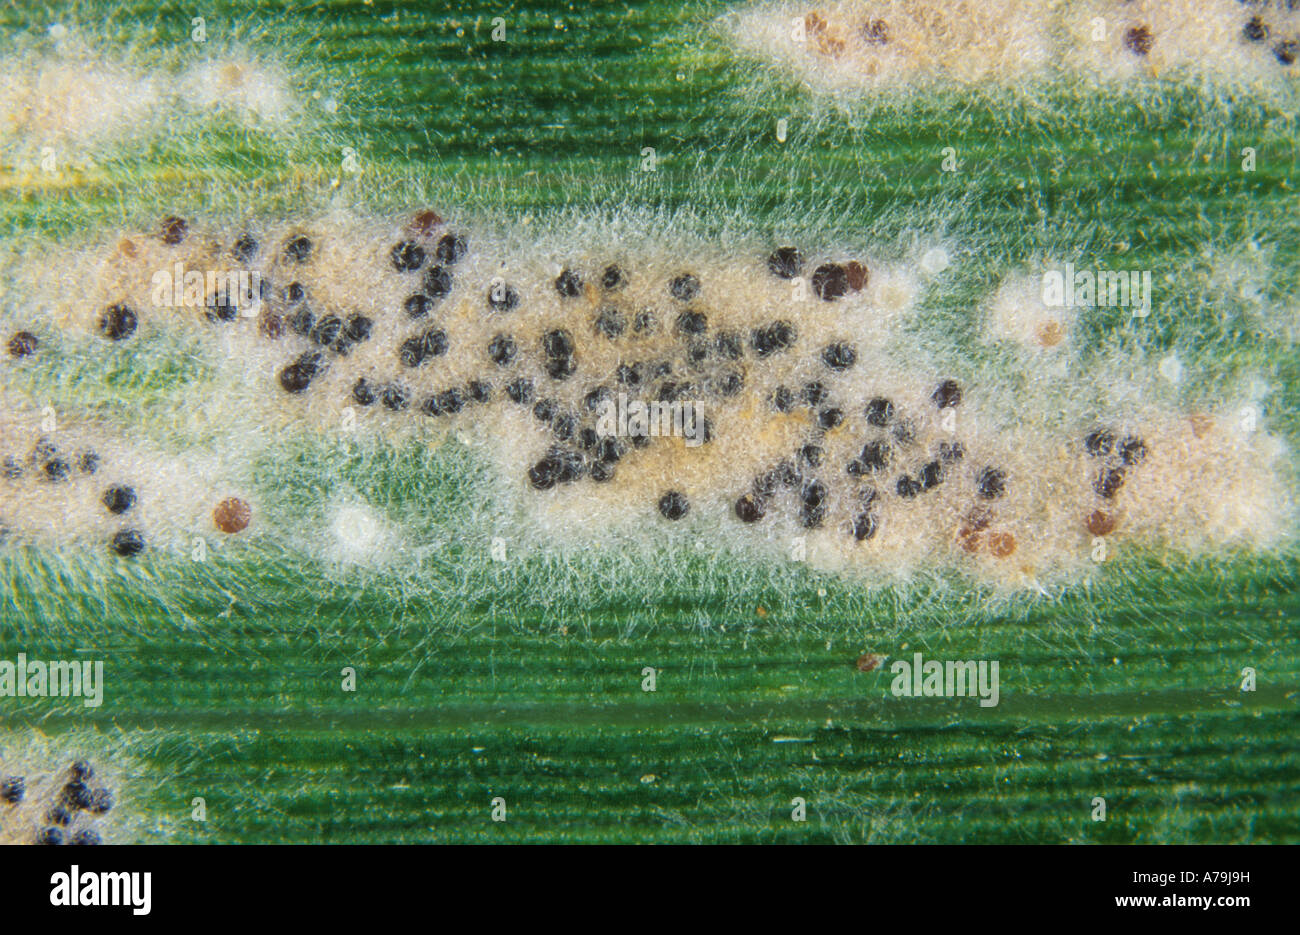 Powdery mildew (Erysiphe graminis f.sp. tritici) mycelium cleistothecia on a wheat leaf Stock Photo